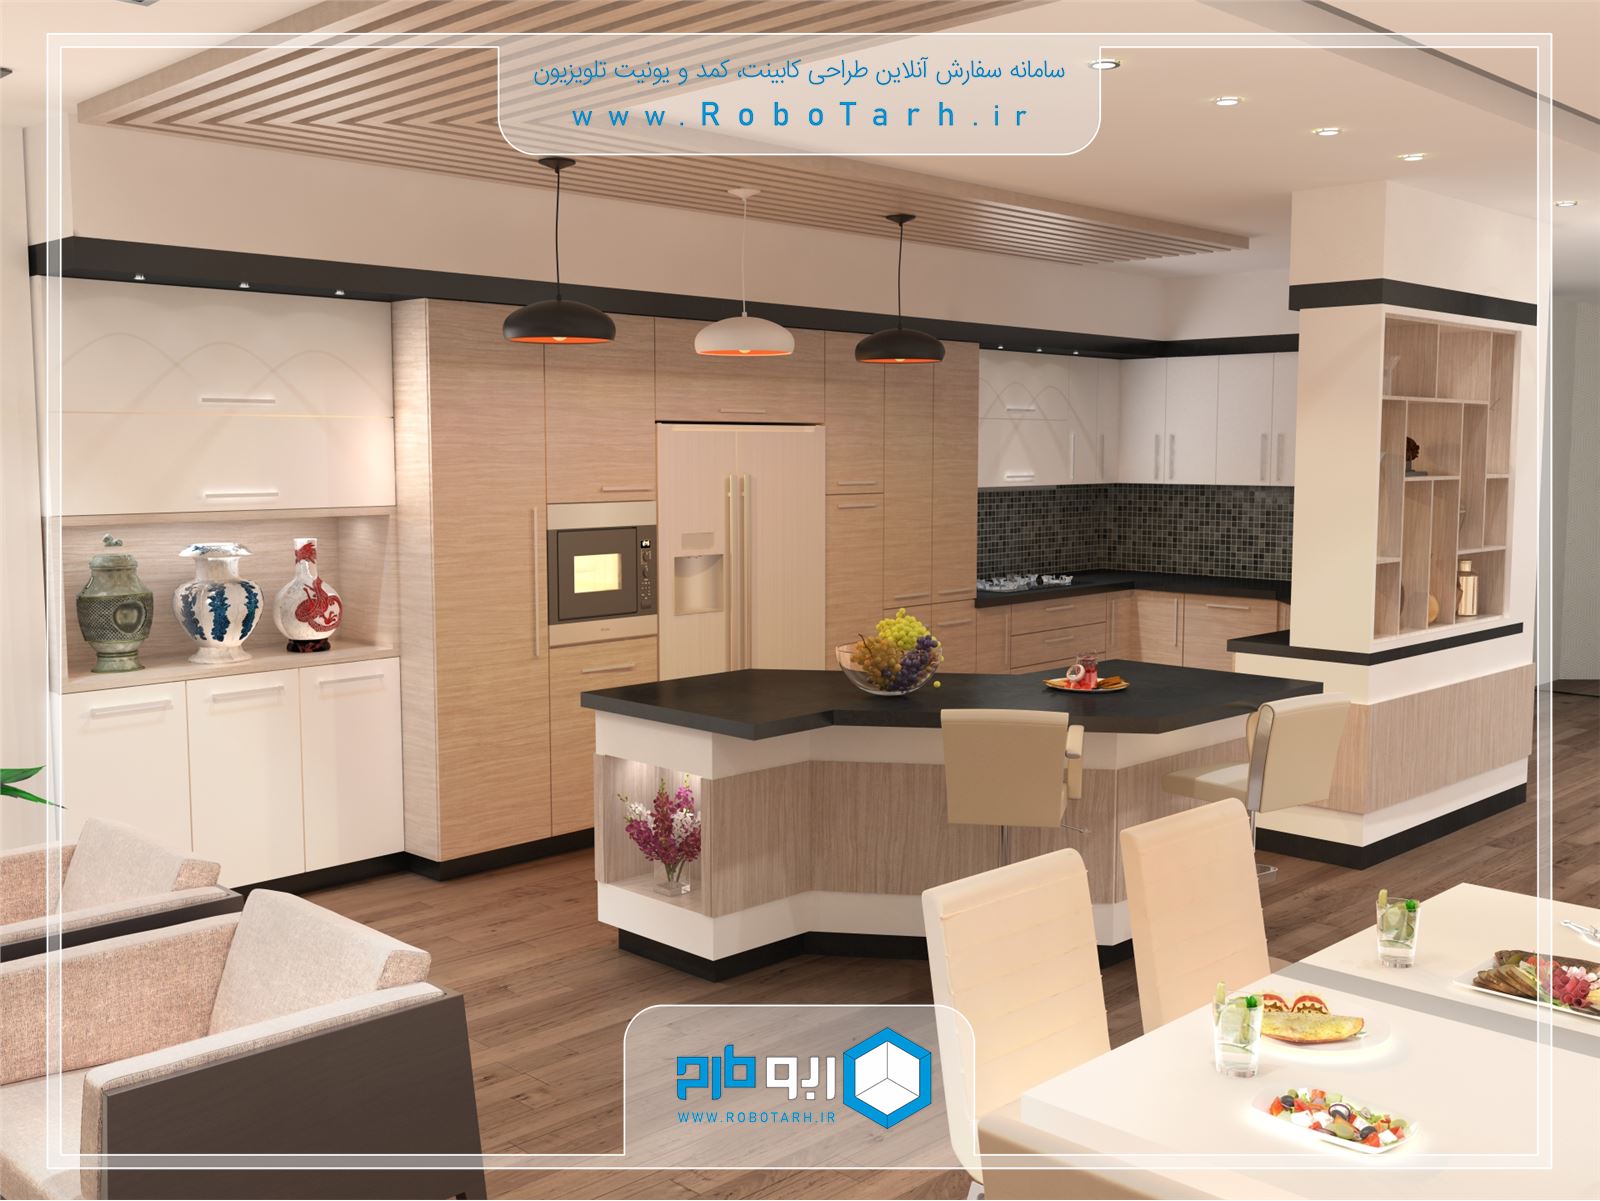 طراحی کابینت آشپزخانه مدرن قهوه ای روشن و سفید با چیدمان ال شکل - ربوطرح